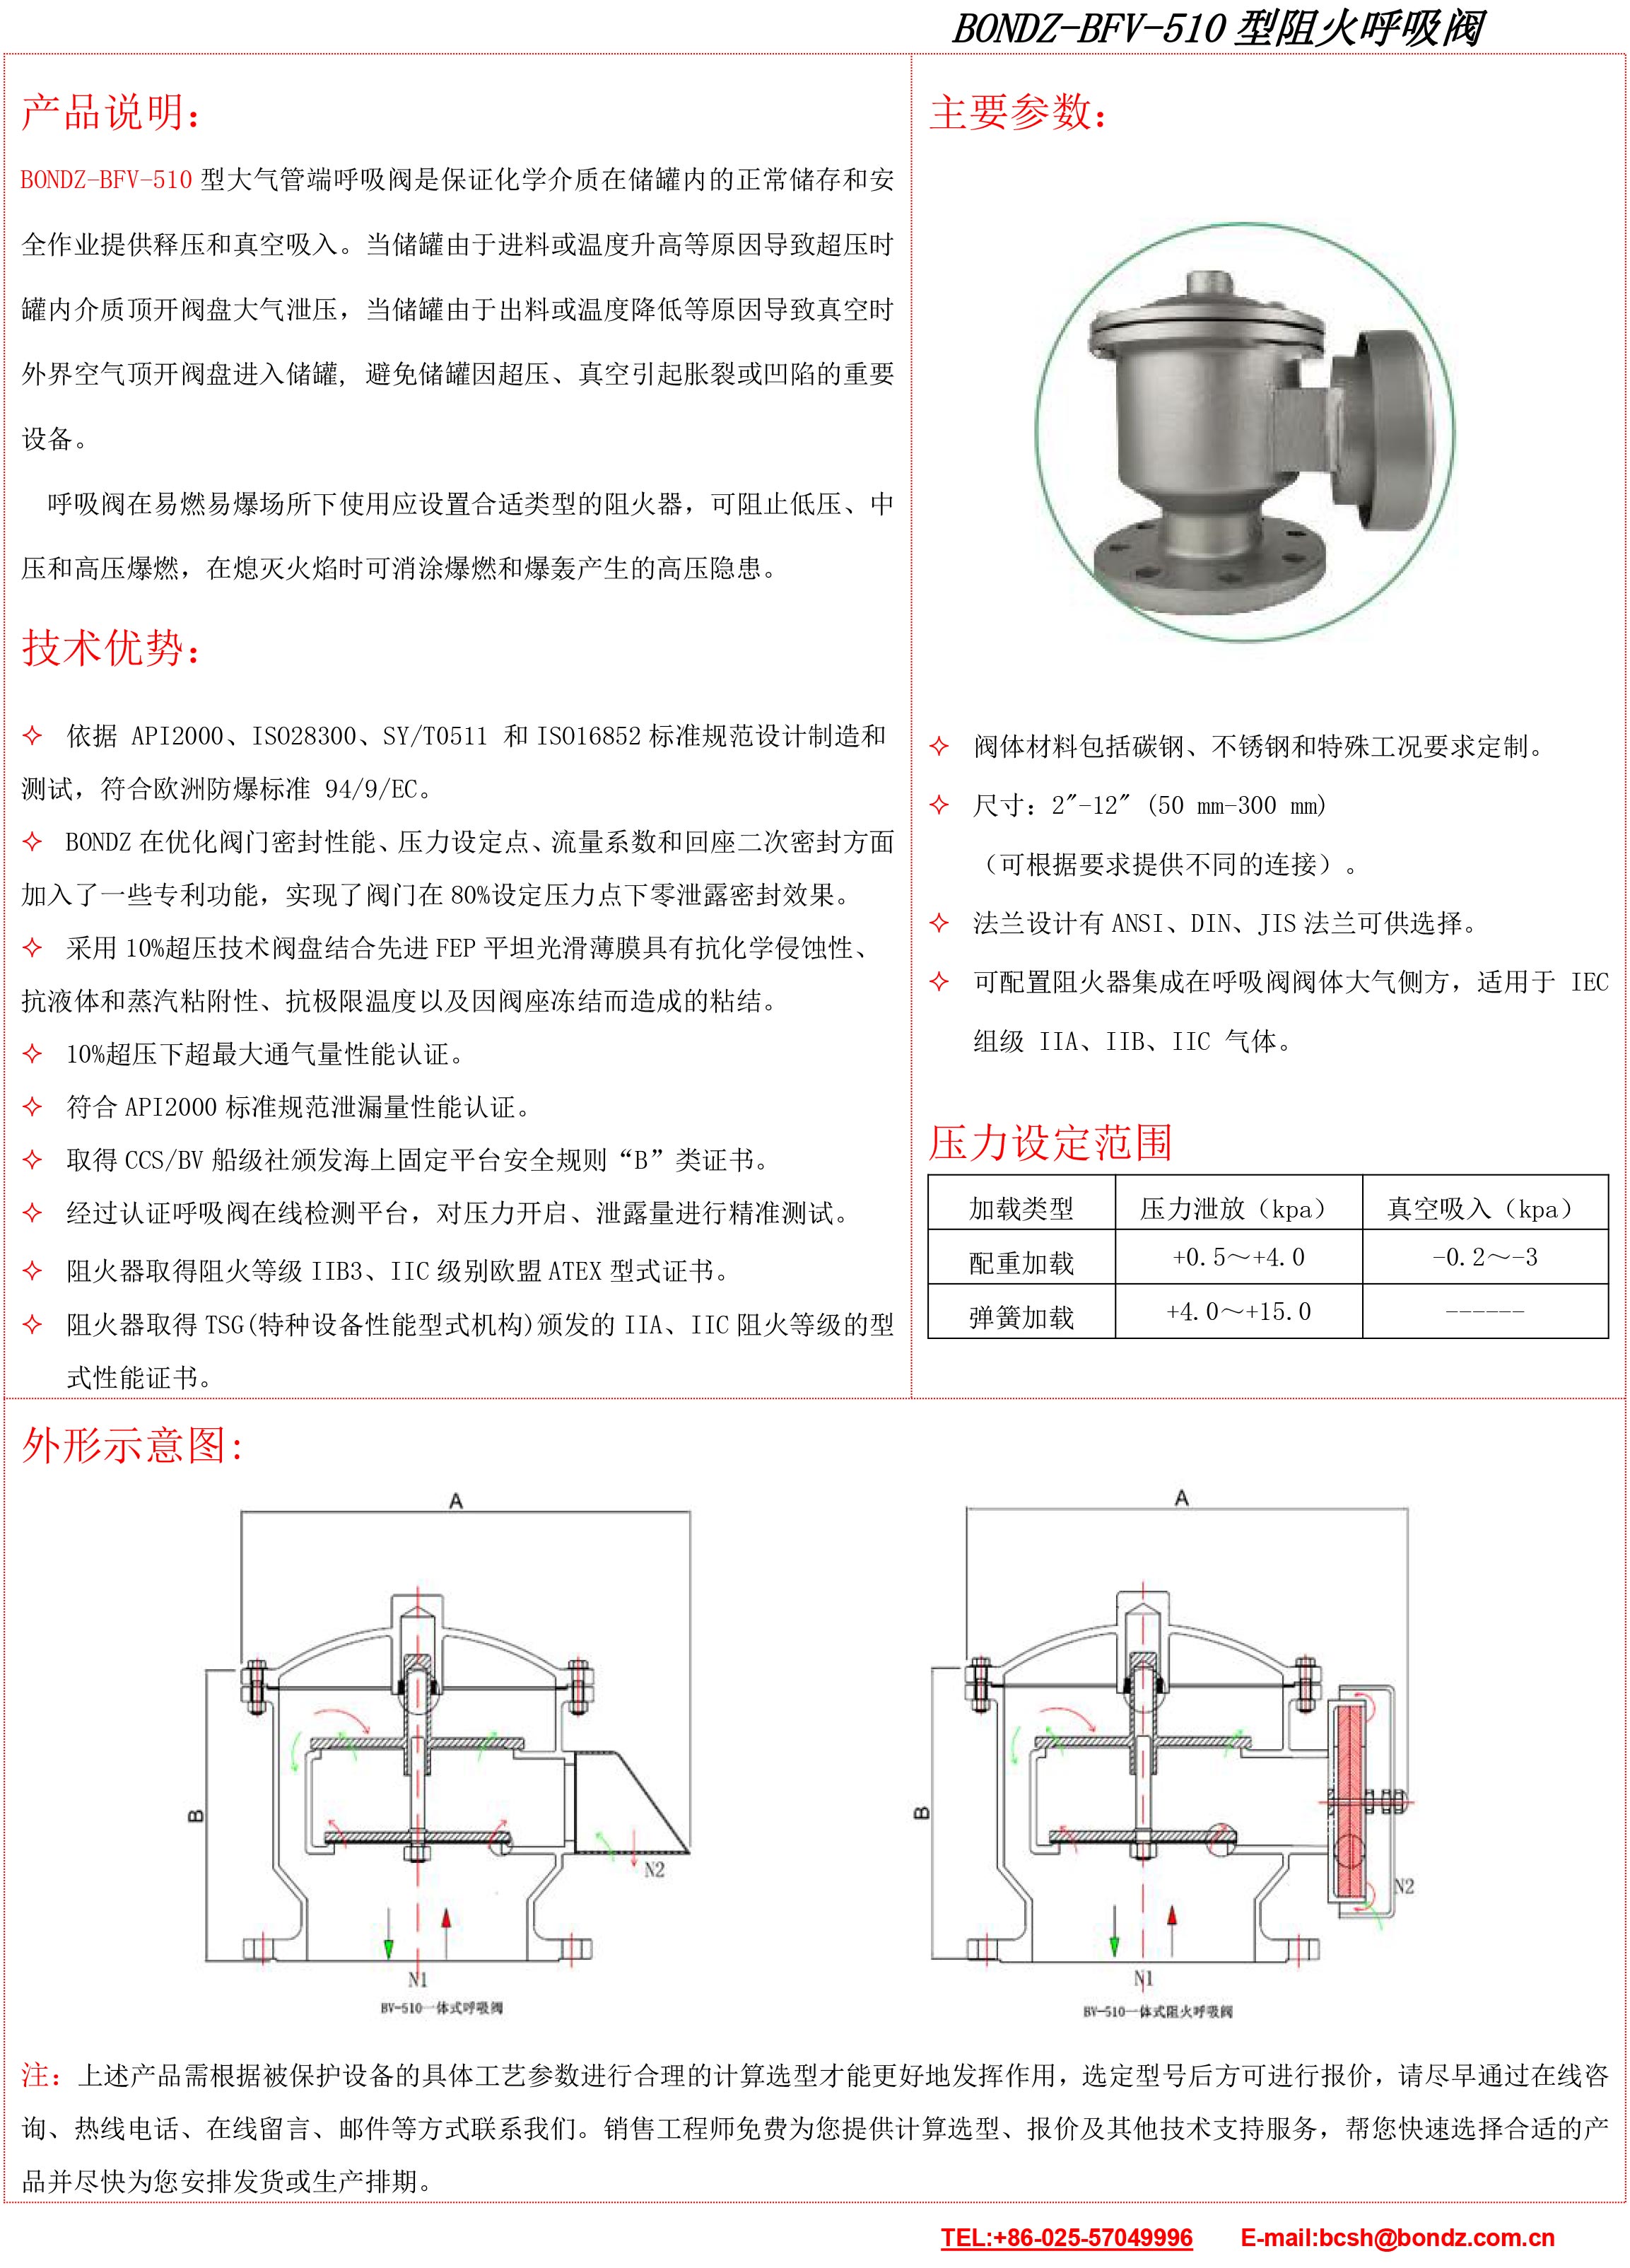 BFV-510阻火呼吸閥（中文）.jpg